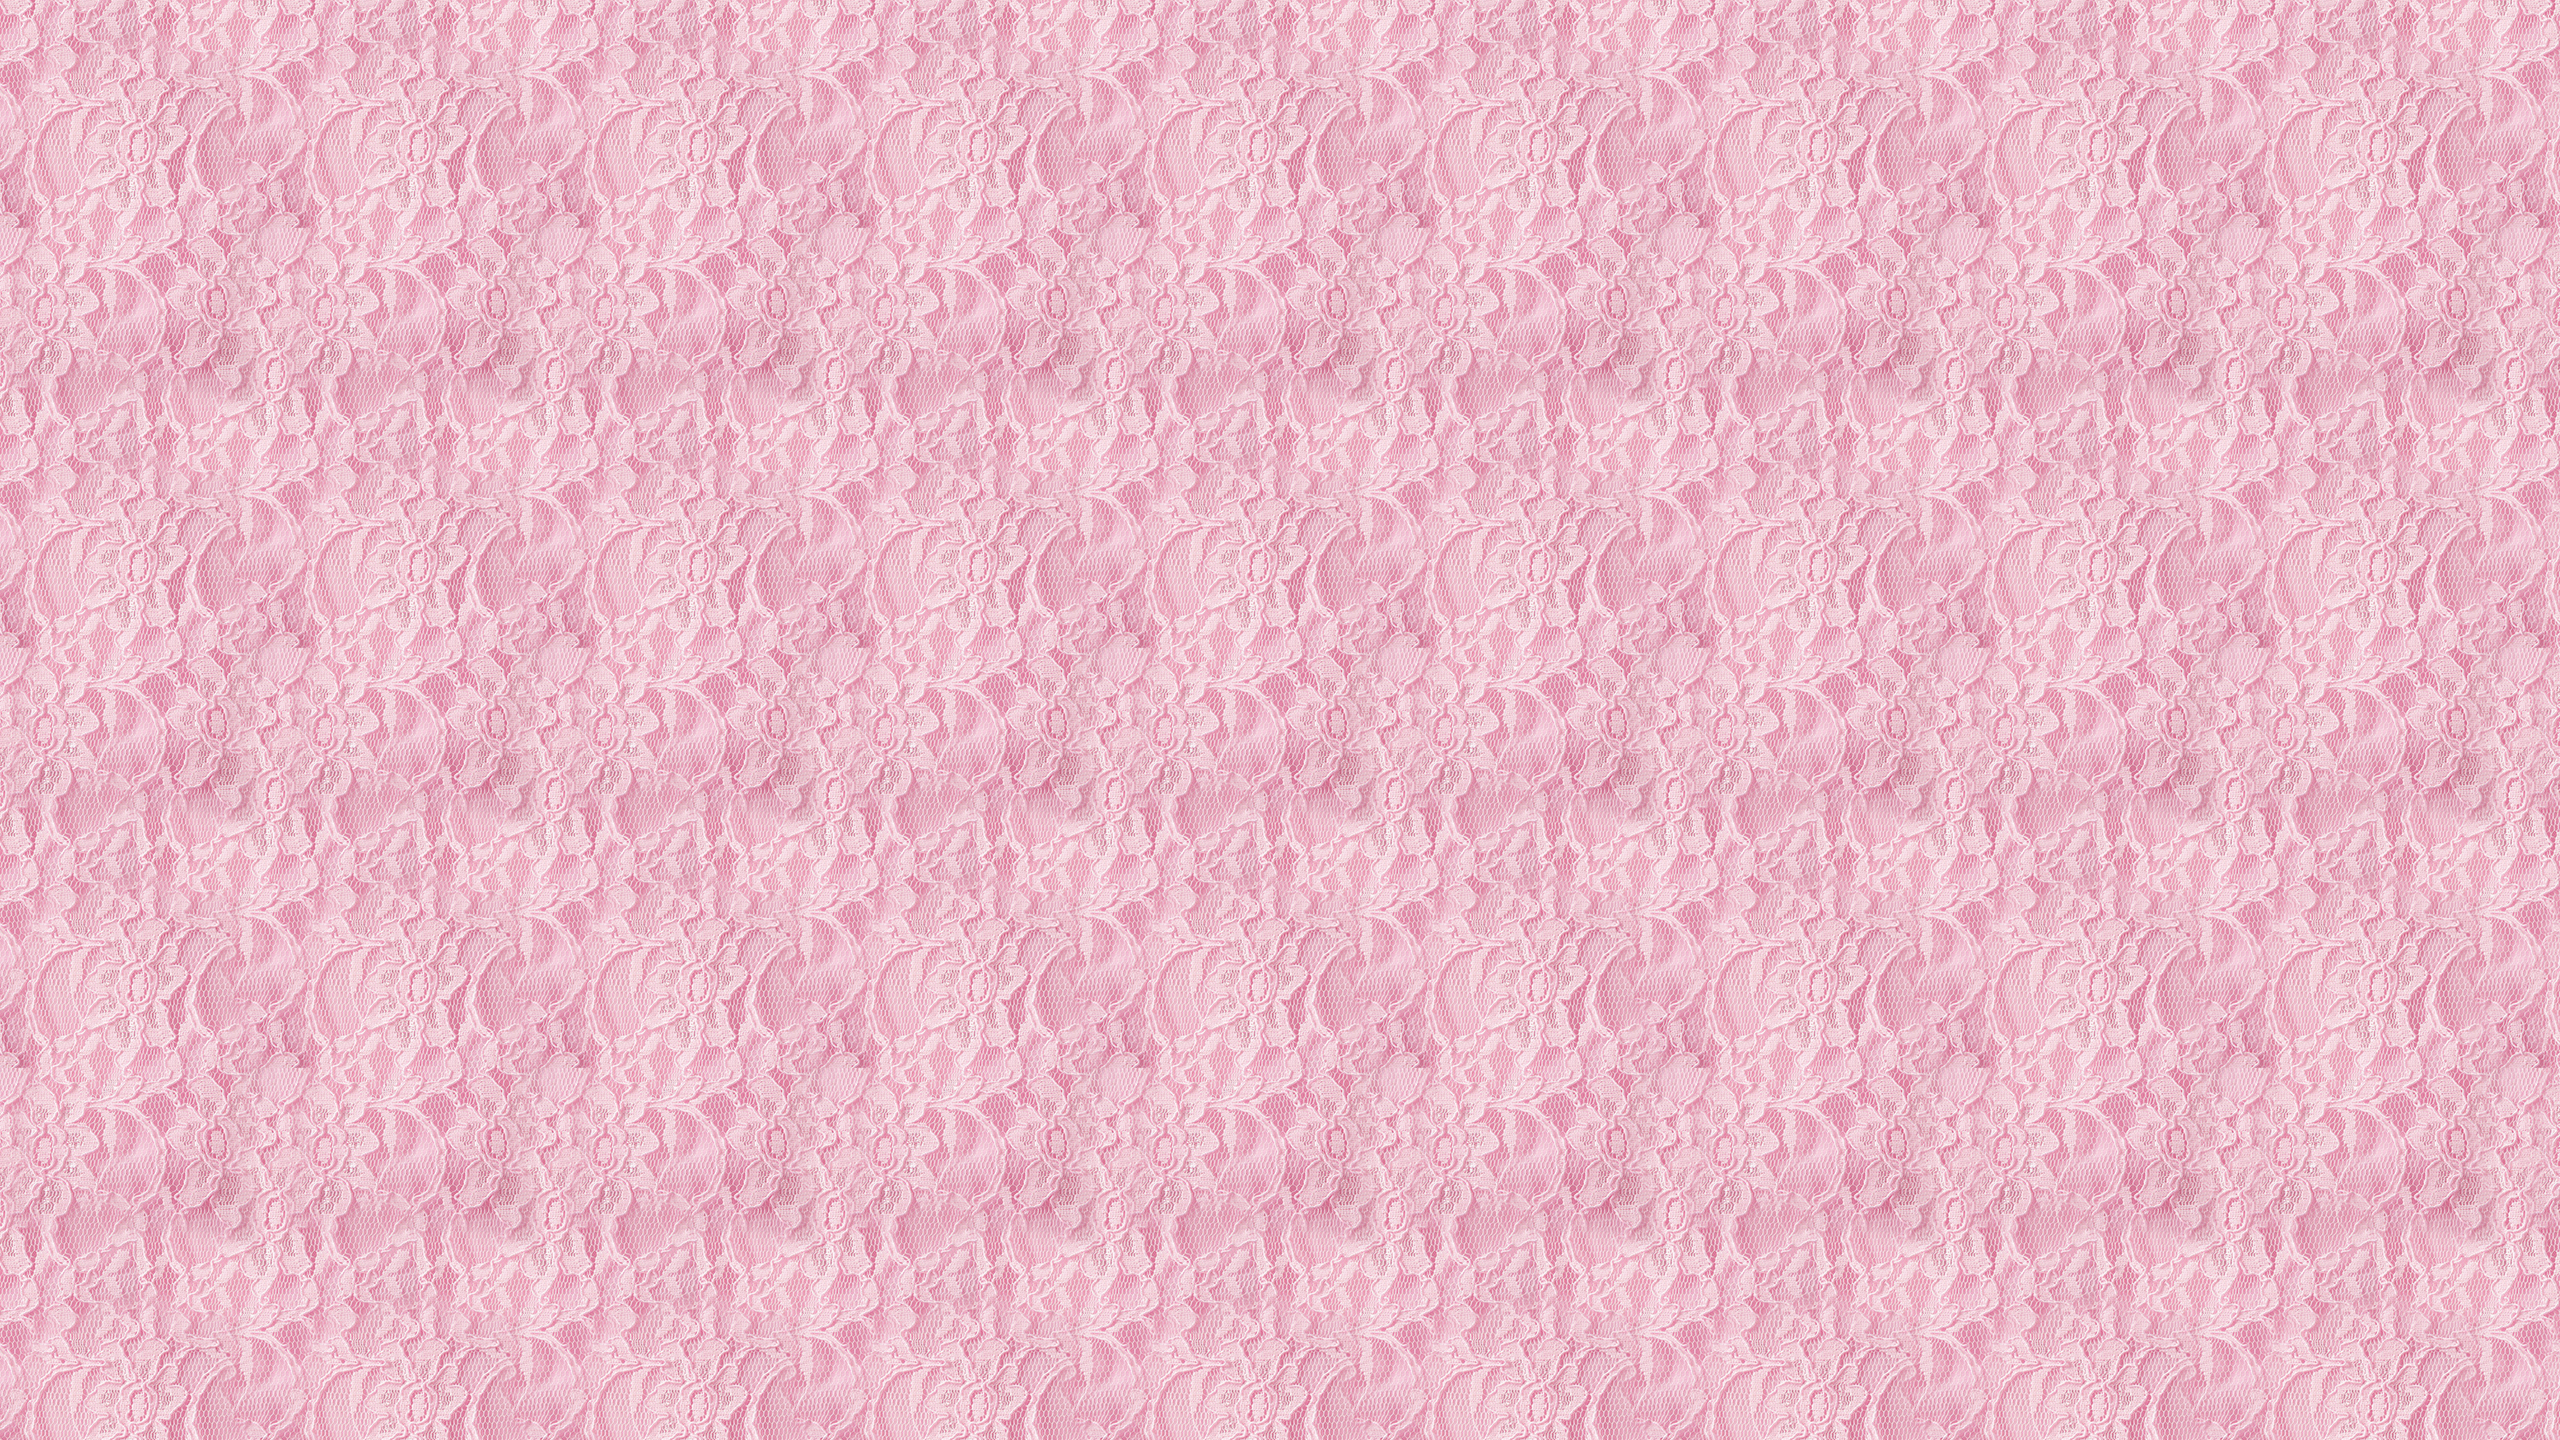 Lace Backgrounds For wwwimgkidcom   The Image